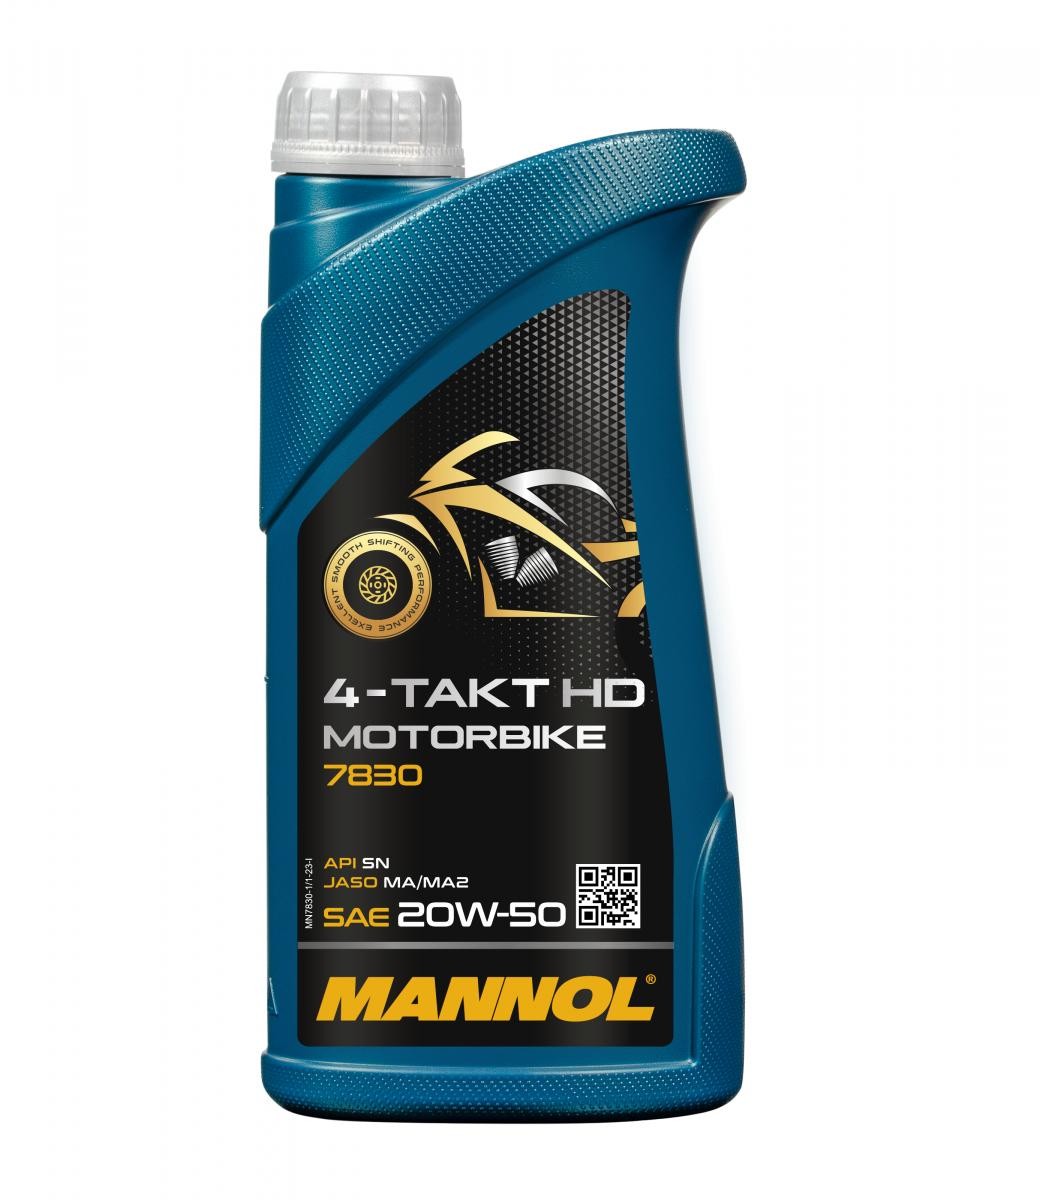 MANNOL MOTORBIKE, 4-Takt HD 20W-50, 1l Motor oil MN7830-1 buy